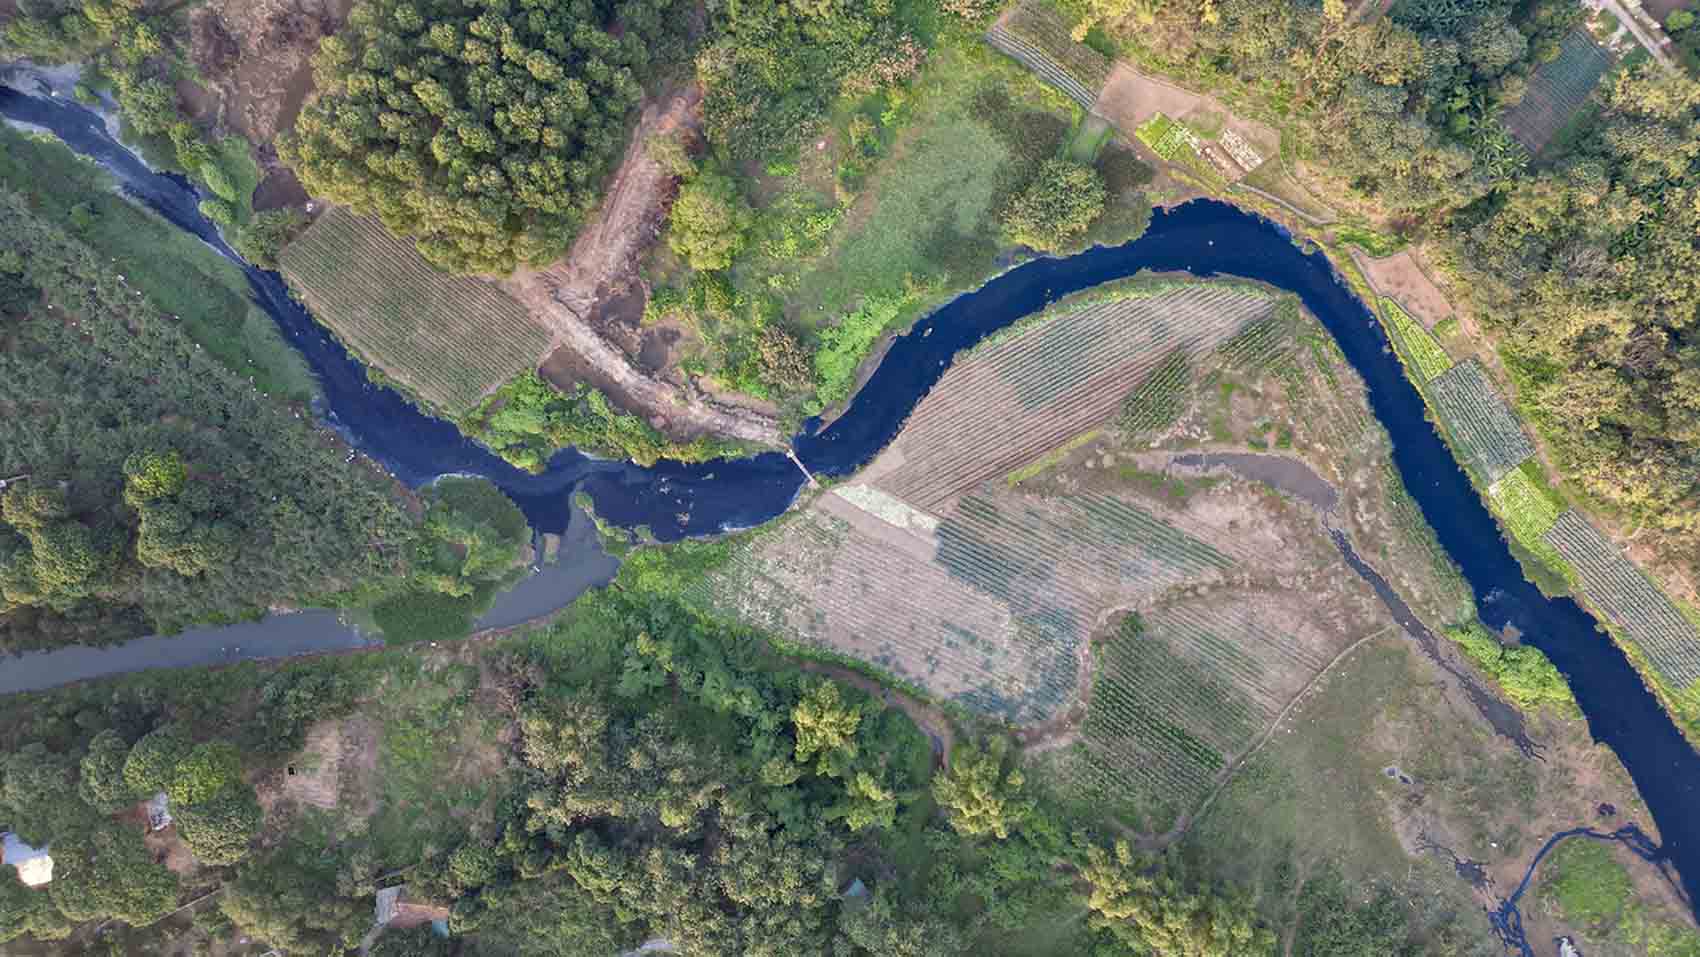 Theo kết quả quan trắc được Tổng cục Môi trường, Bộ Tài nguyên và Môi trường (TNMT) công bố năm 2020, sông Nhuệ - Đáy có chất lượng môi trường nước kém nhất trong năm lưu vực sông ở miền Bắc. Trong 185 điểm quan trắc của năm lưu vực có 15 điểm ô nhiễm, riêng sông Nhuệ - Đáy chiếm 13 điểm. 